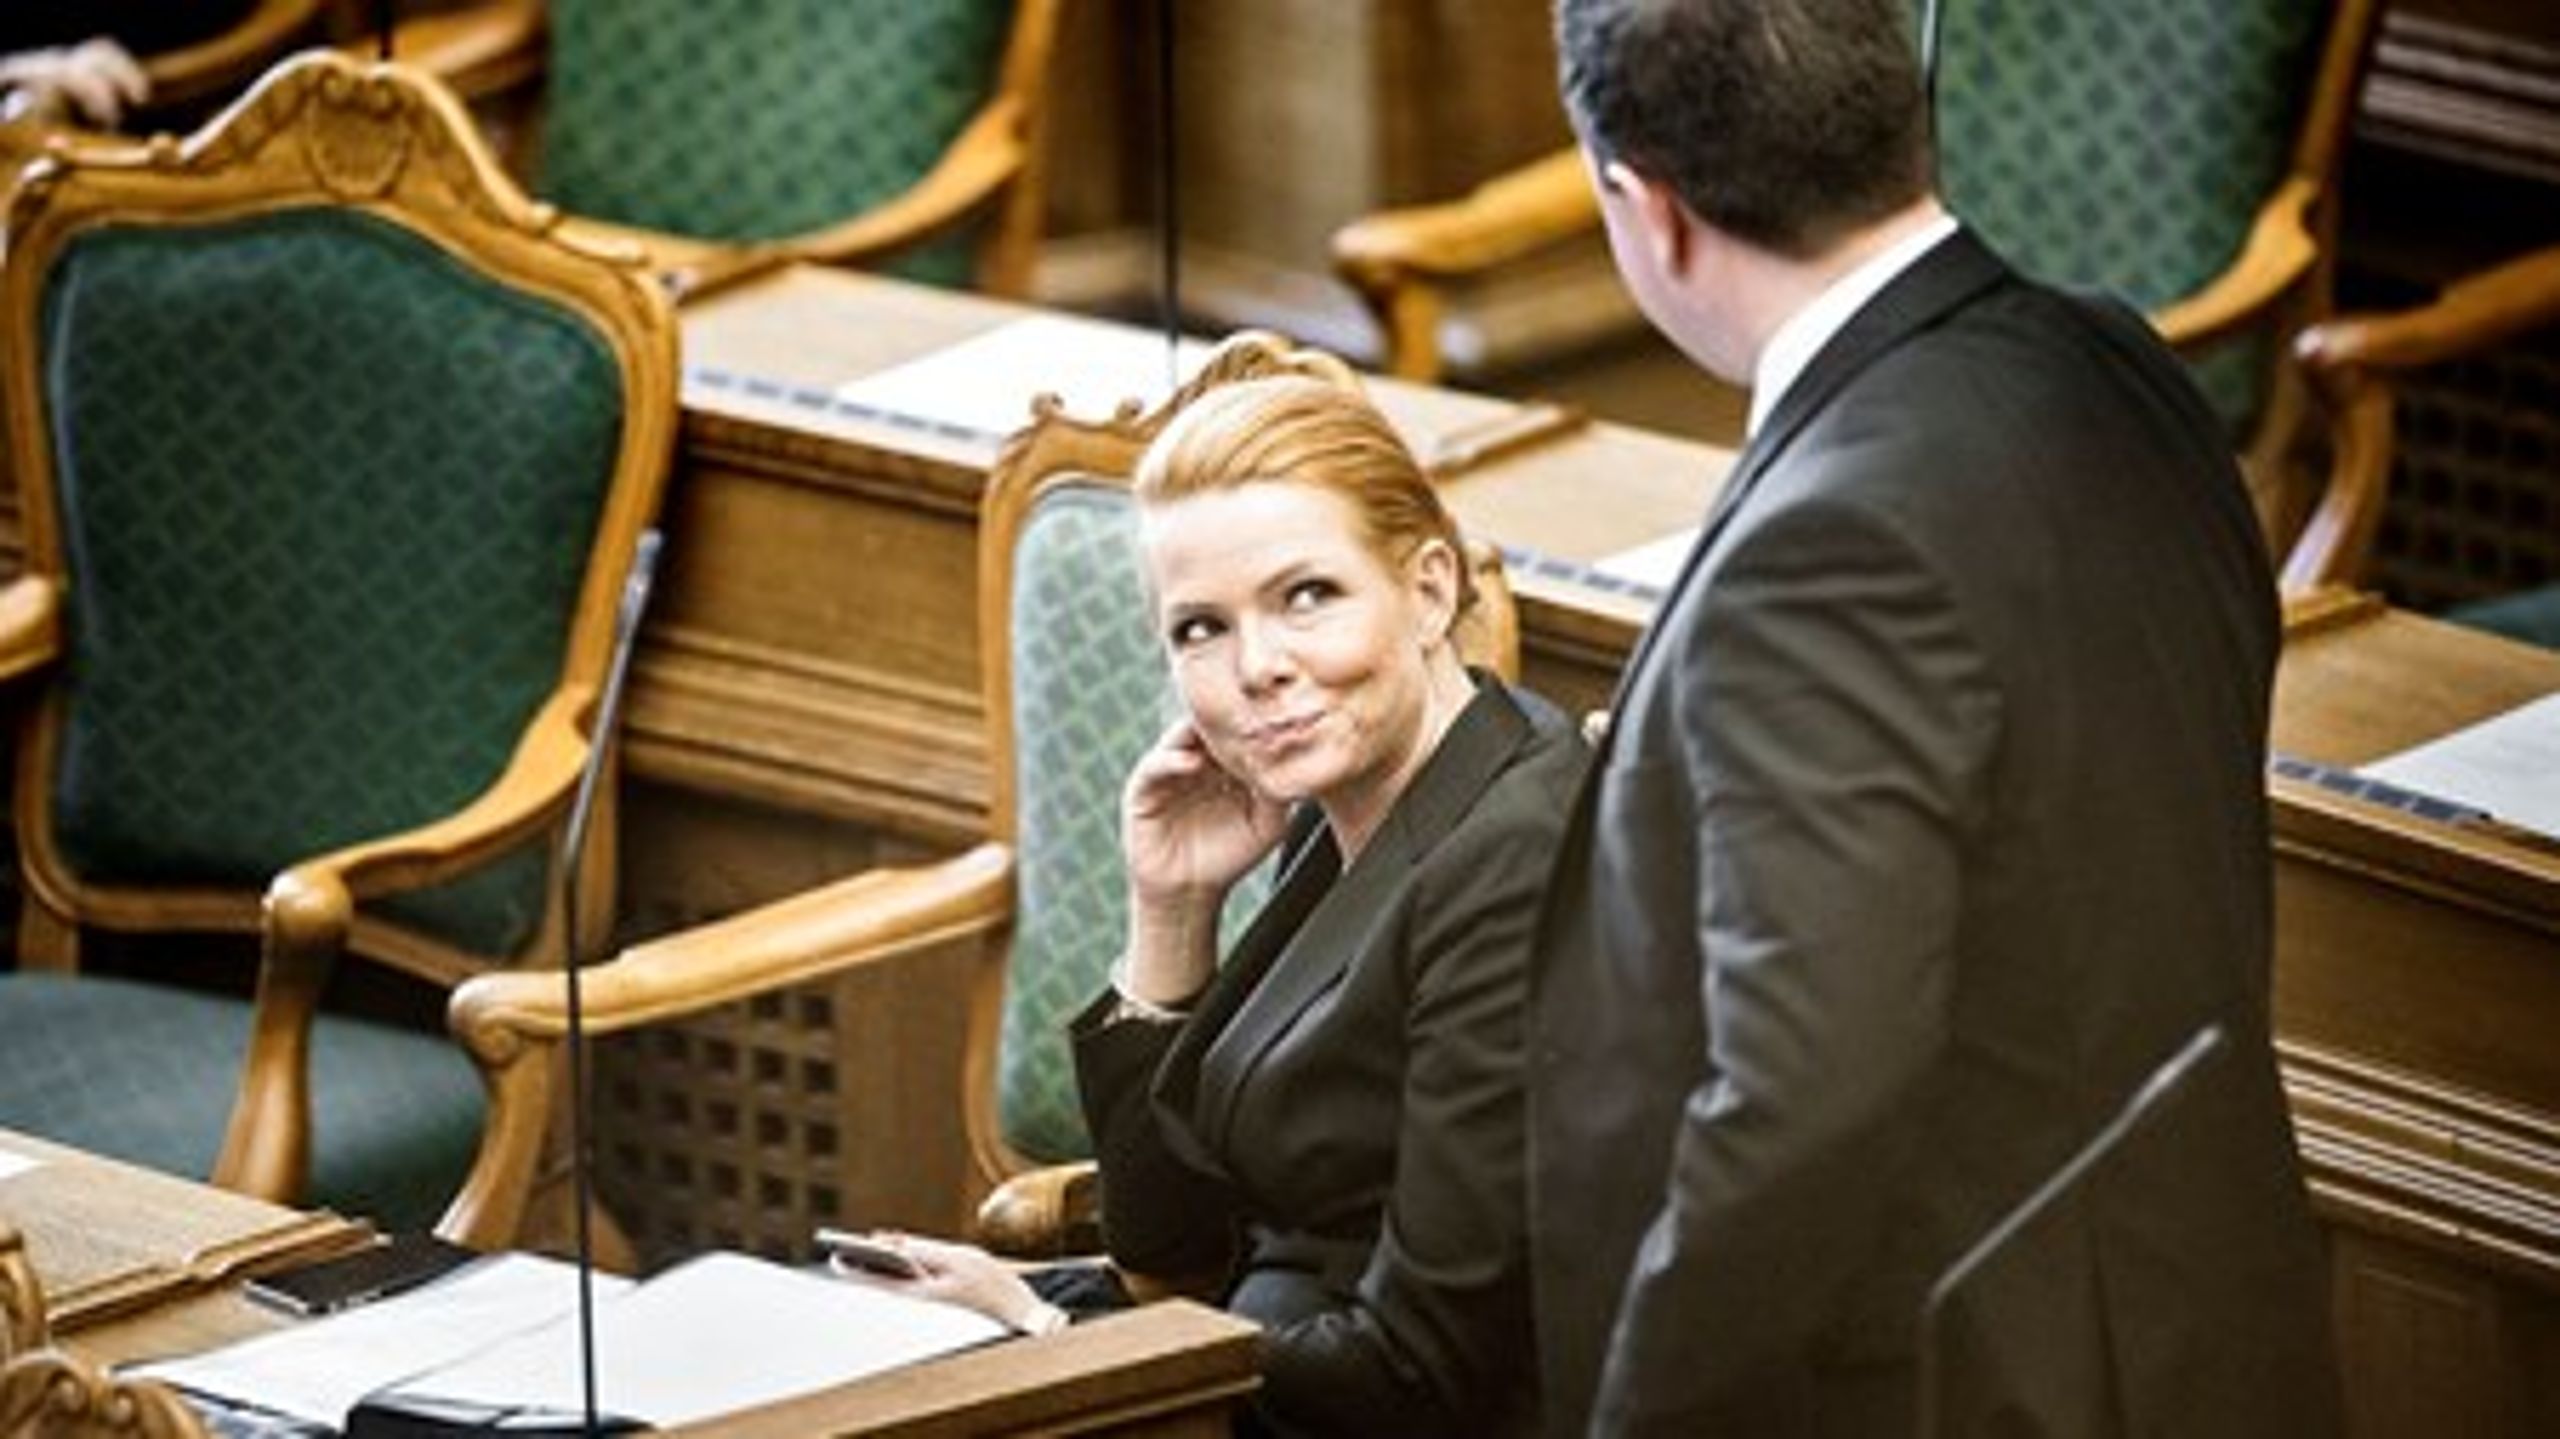 Både udlænidnge- og integrationsminister&nbsp;Inger Støjberg og Dansk Folkepartis Martin Henriksen var på talerstolen under debatten forud for afstemningen om de omdiskuterede udlændingestramninger.&nbsp;